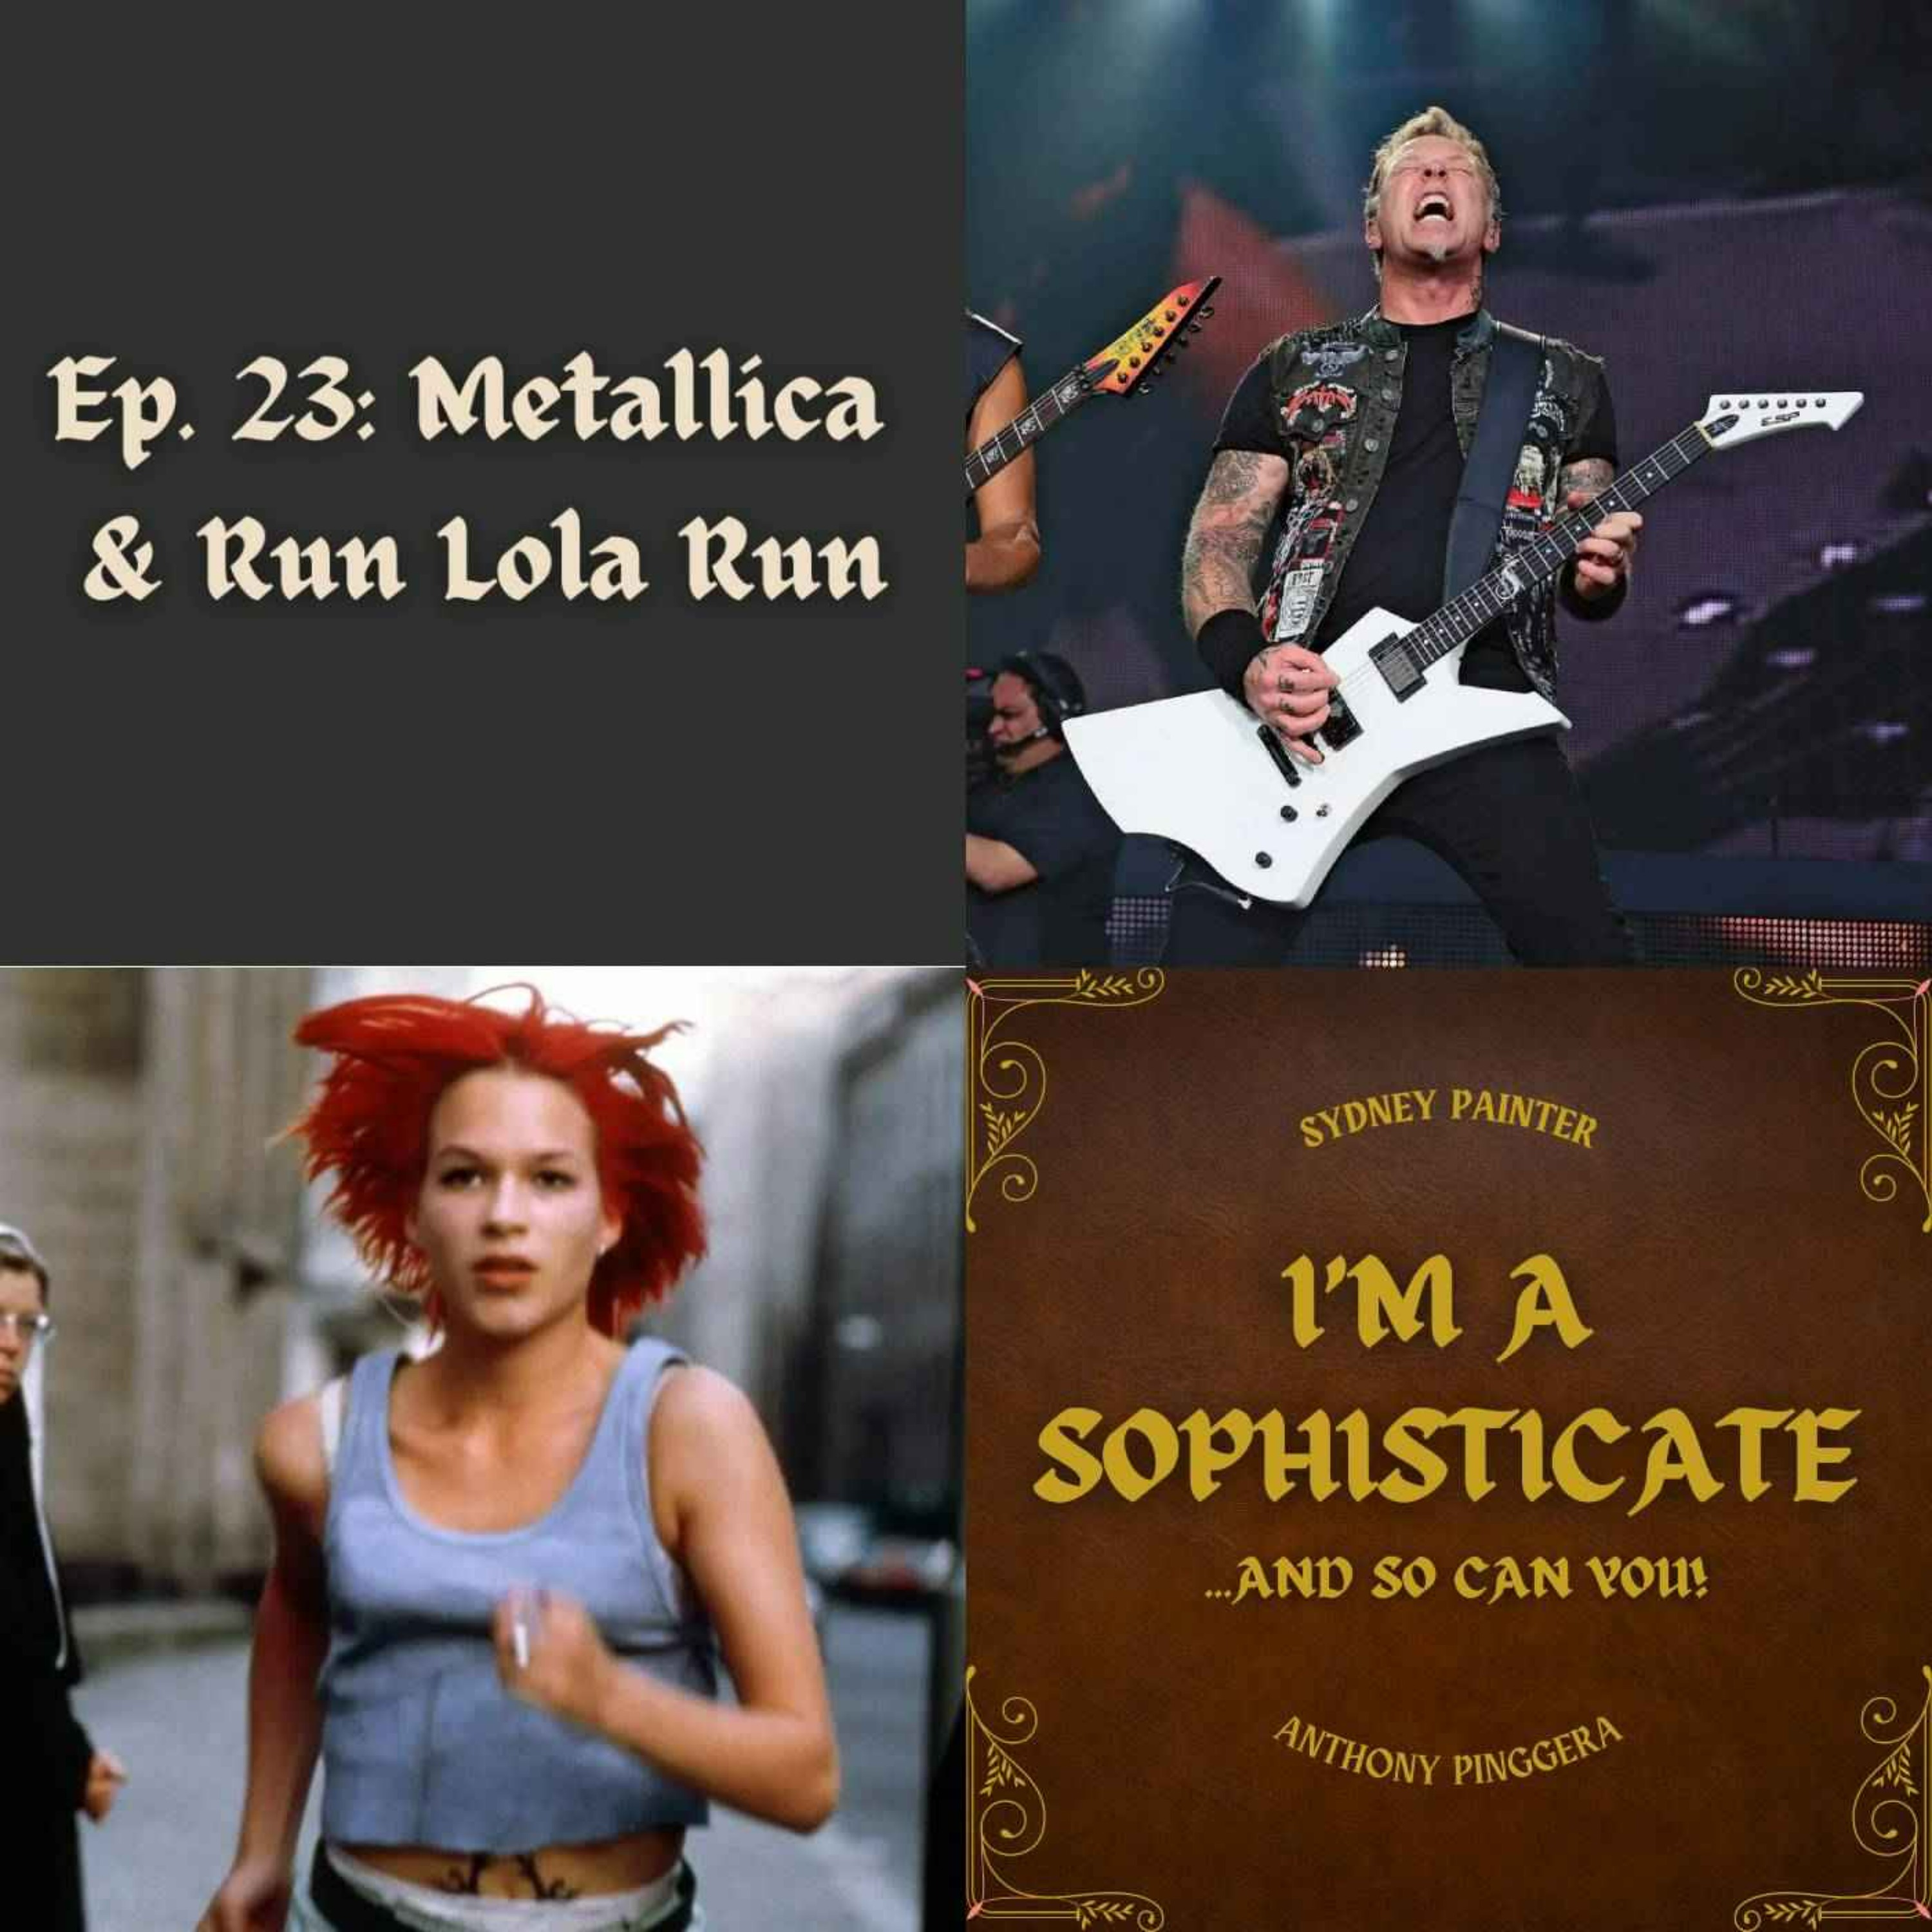 Metallica & Run Lola Run Image